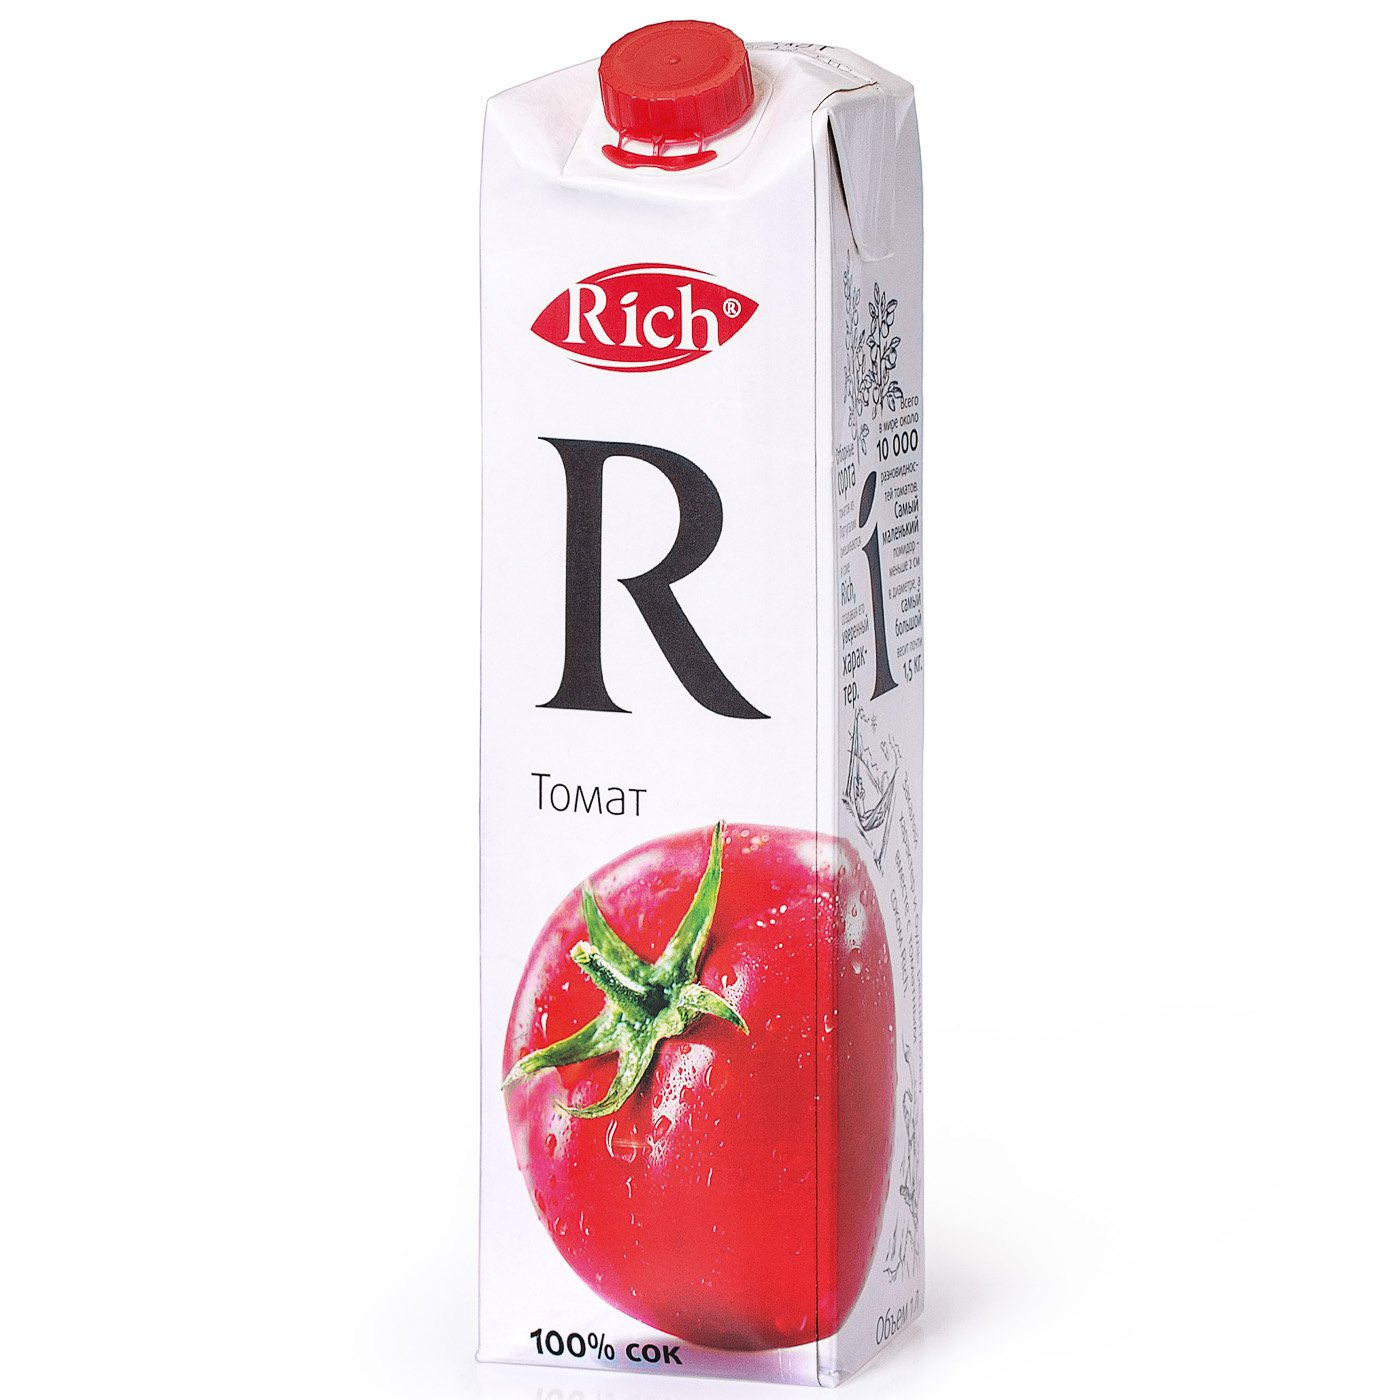 Сок ричи состав. Сок Рич (Rich) 1л томат. Rich сок Rich томат 1л. Сок "Рич" томат, 1 л. Сок Rich 200 мл стекло томат.